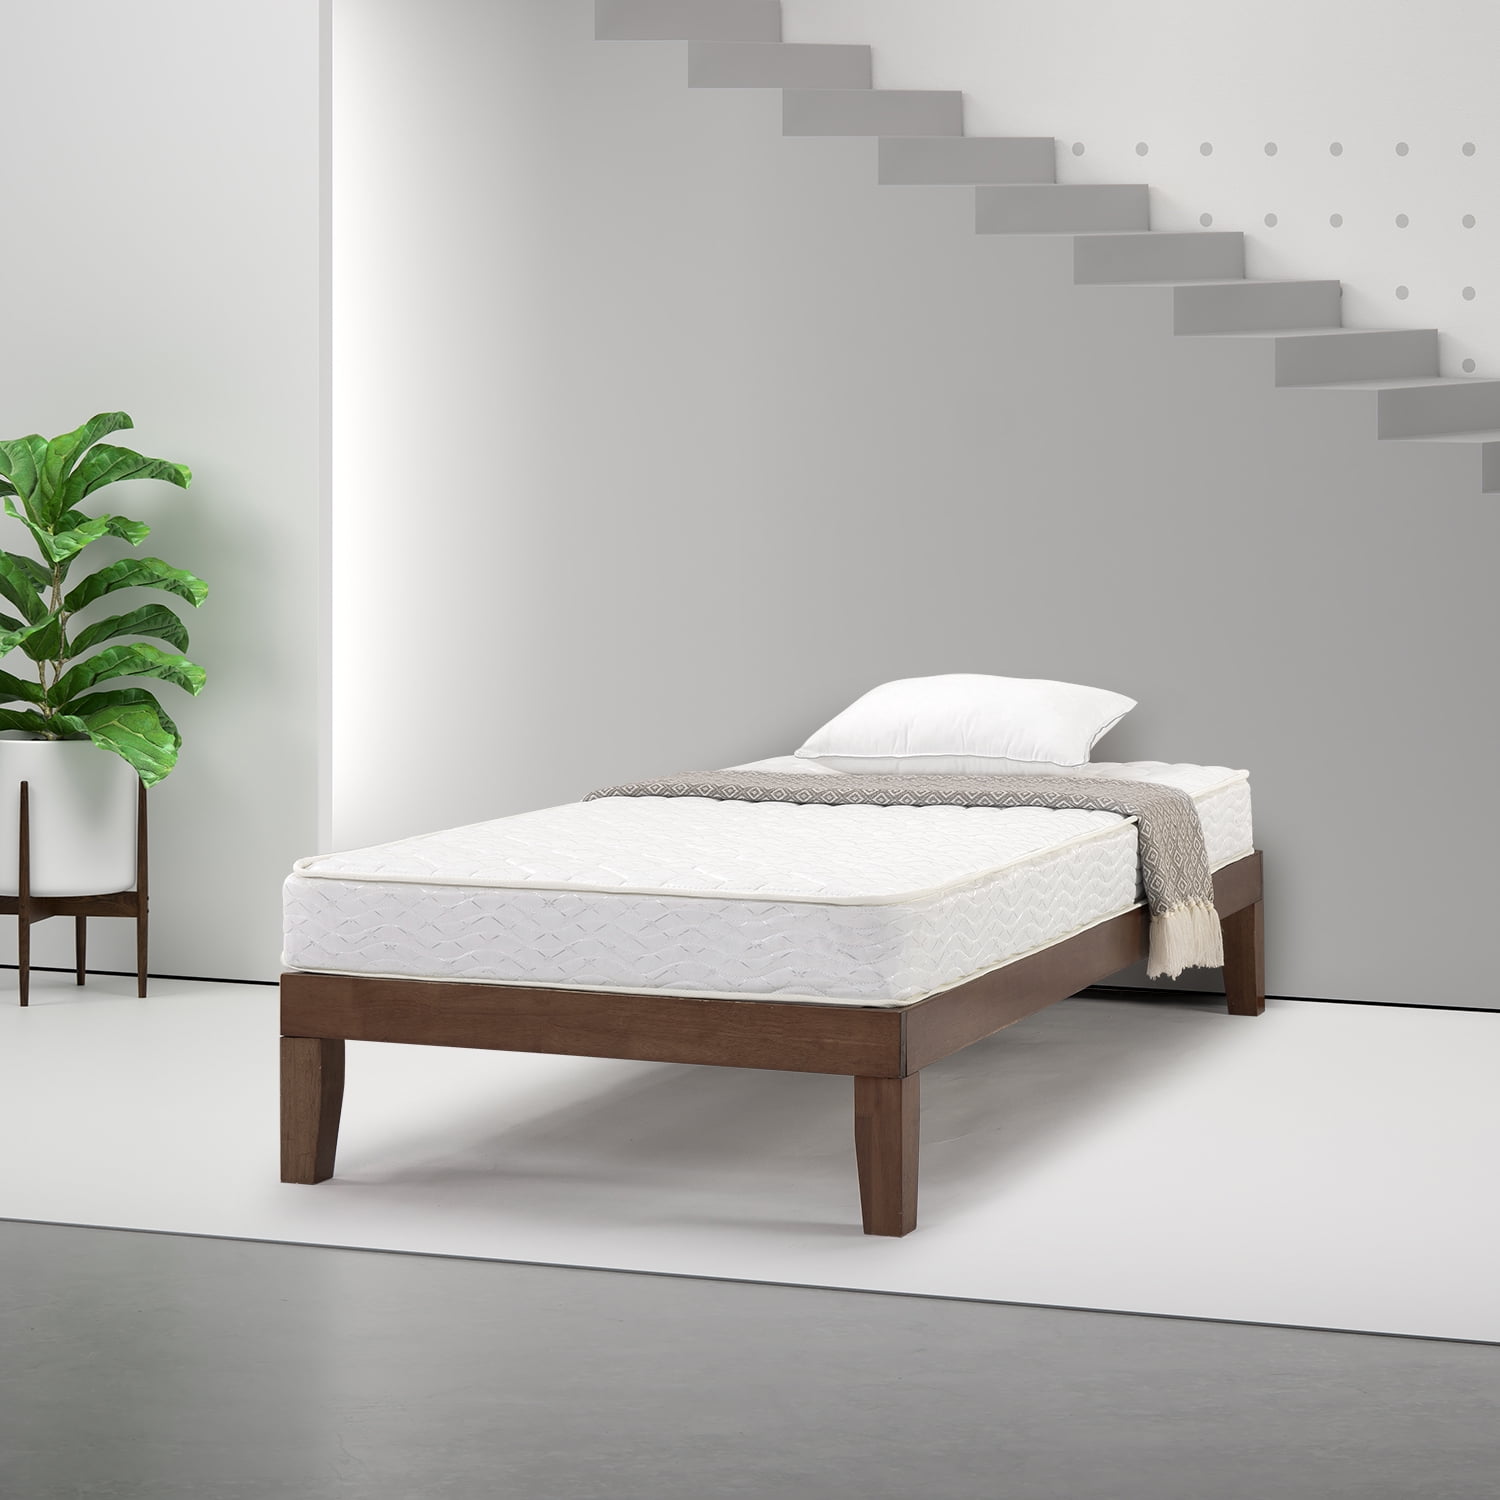 Slumber 1 By Zinus Comfort 6, Most Comfortable Bunk Bed Mattress